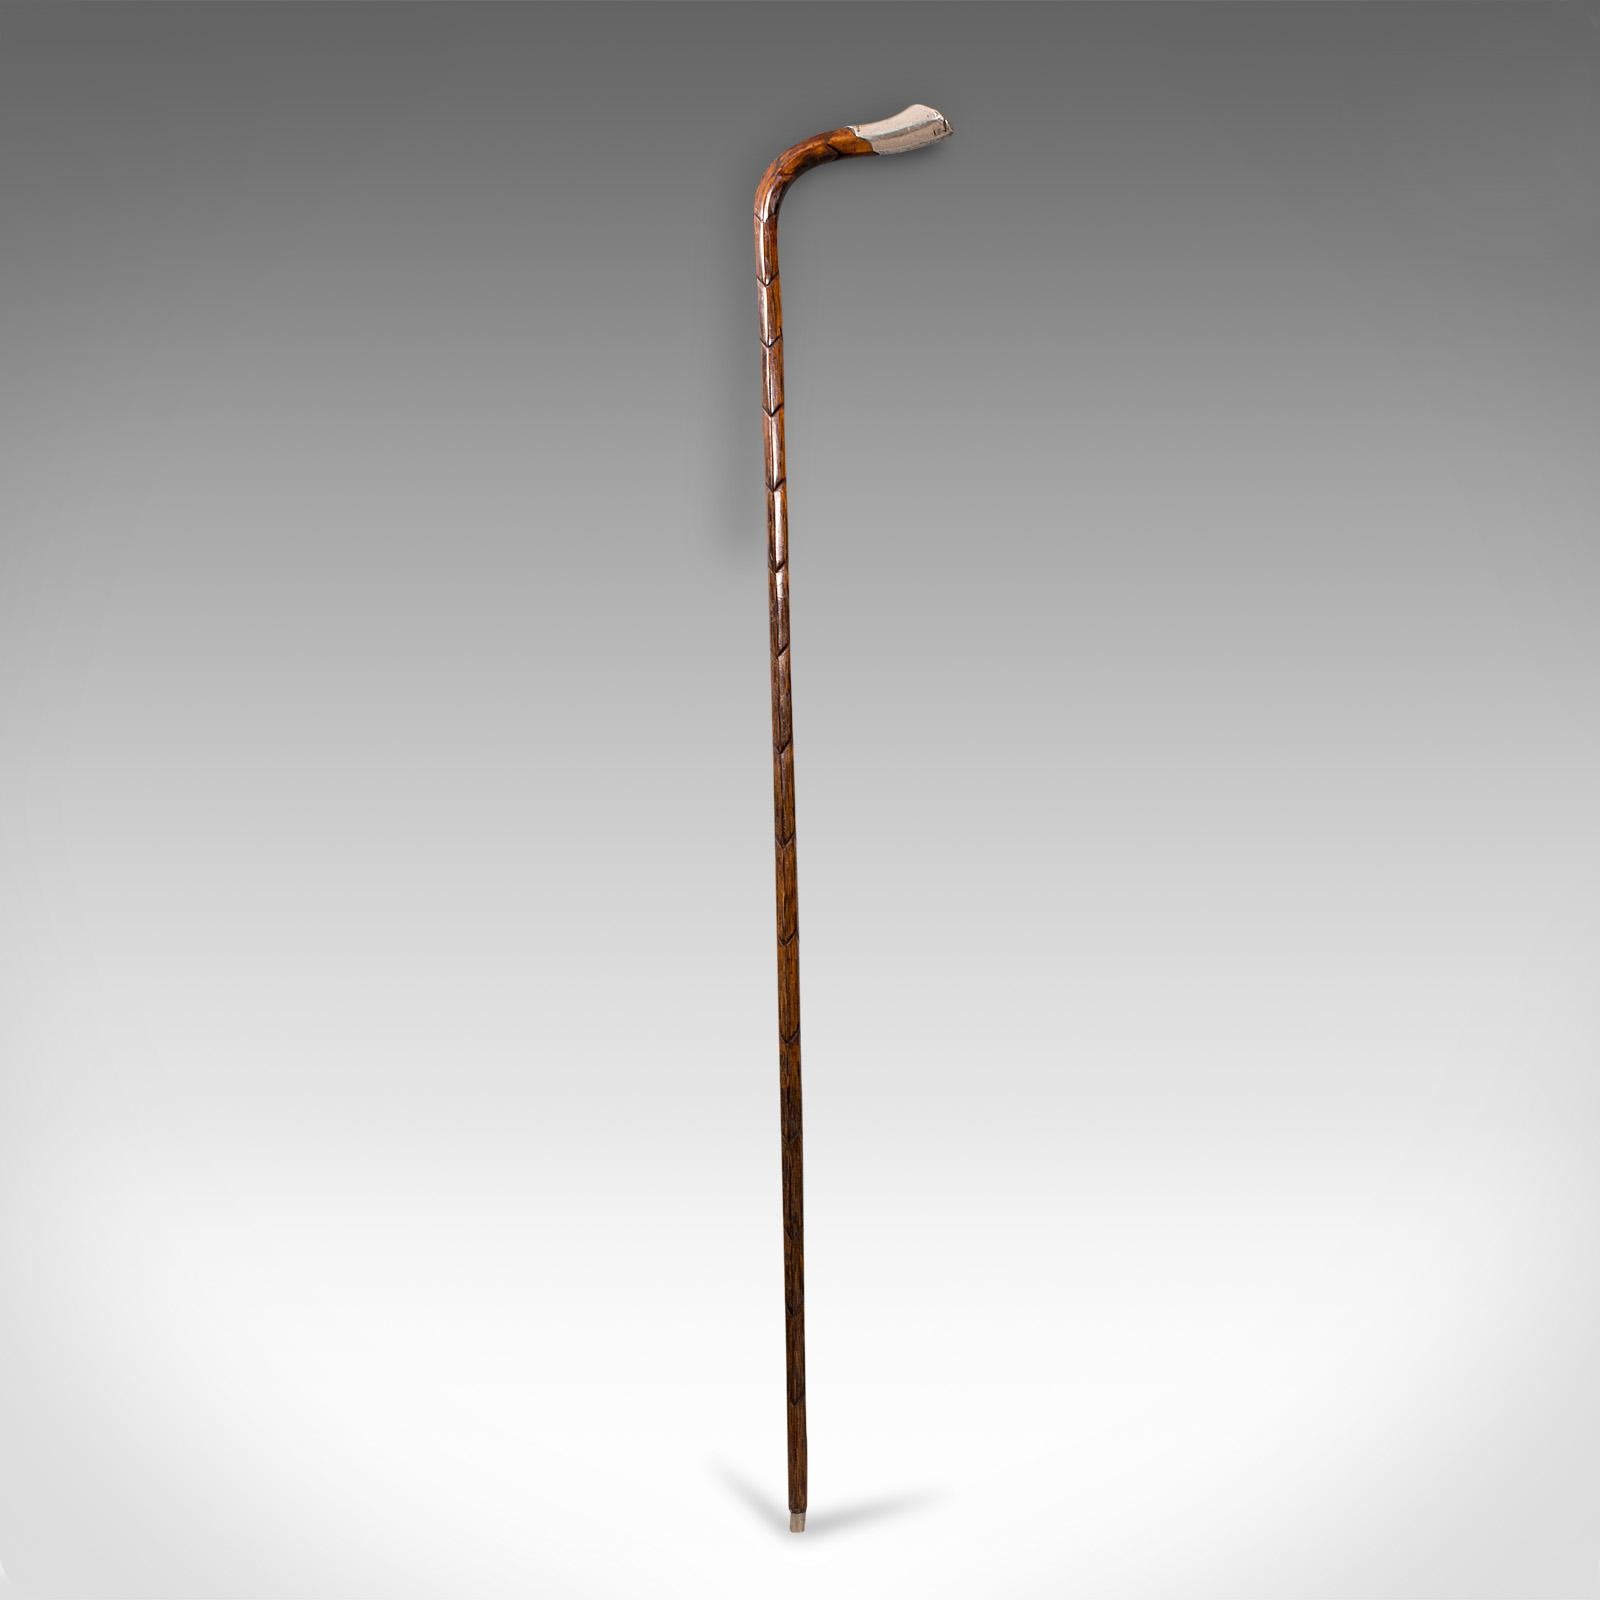 British Antique Gentleman's Walking Stick, English, Coromandel, Silver, Cane, Edwardian